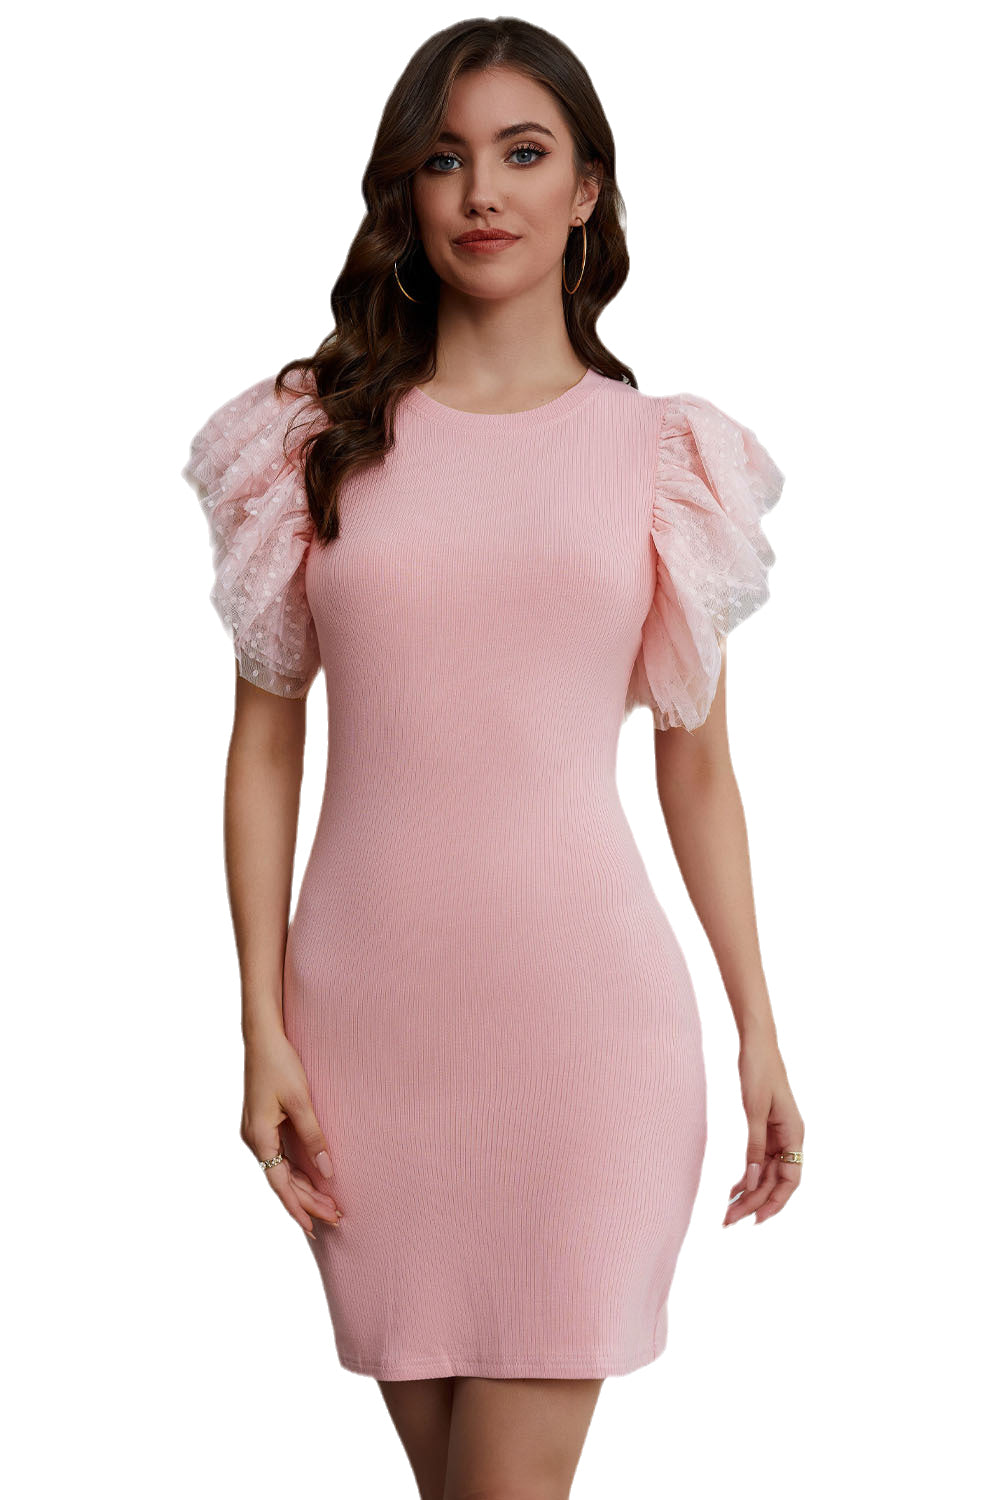 Rožnata pletena oprijeta obleka z rokavi iz tila in naborki